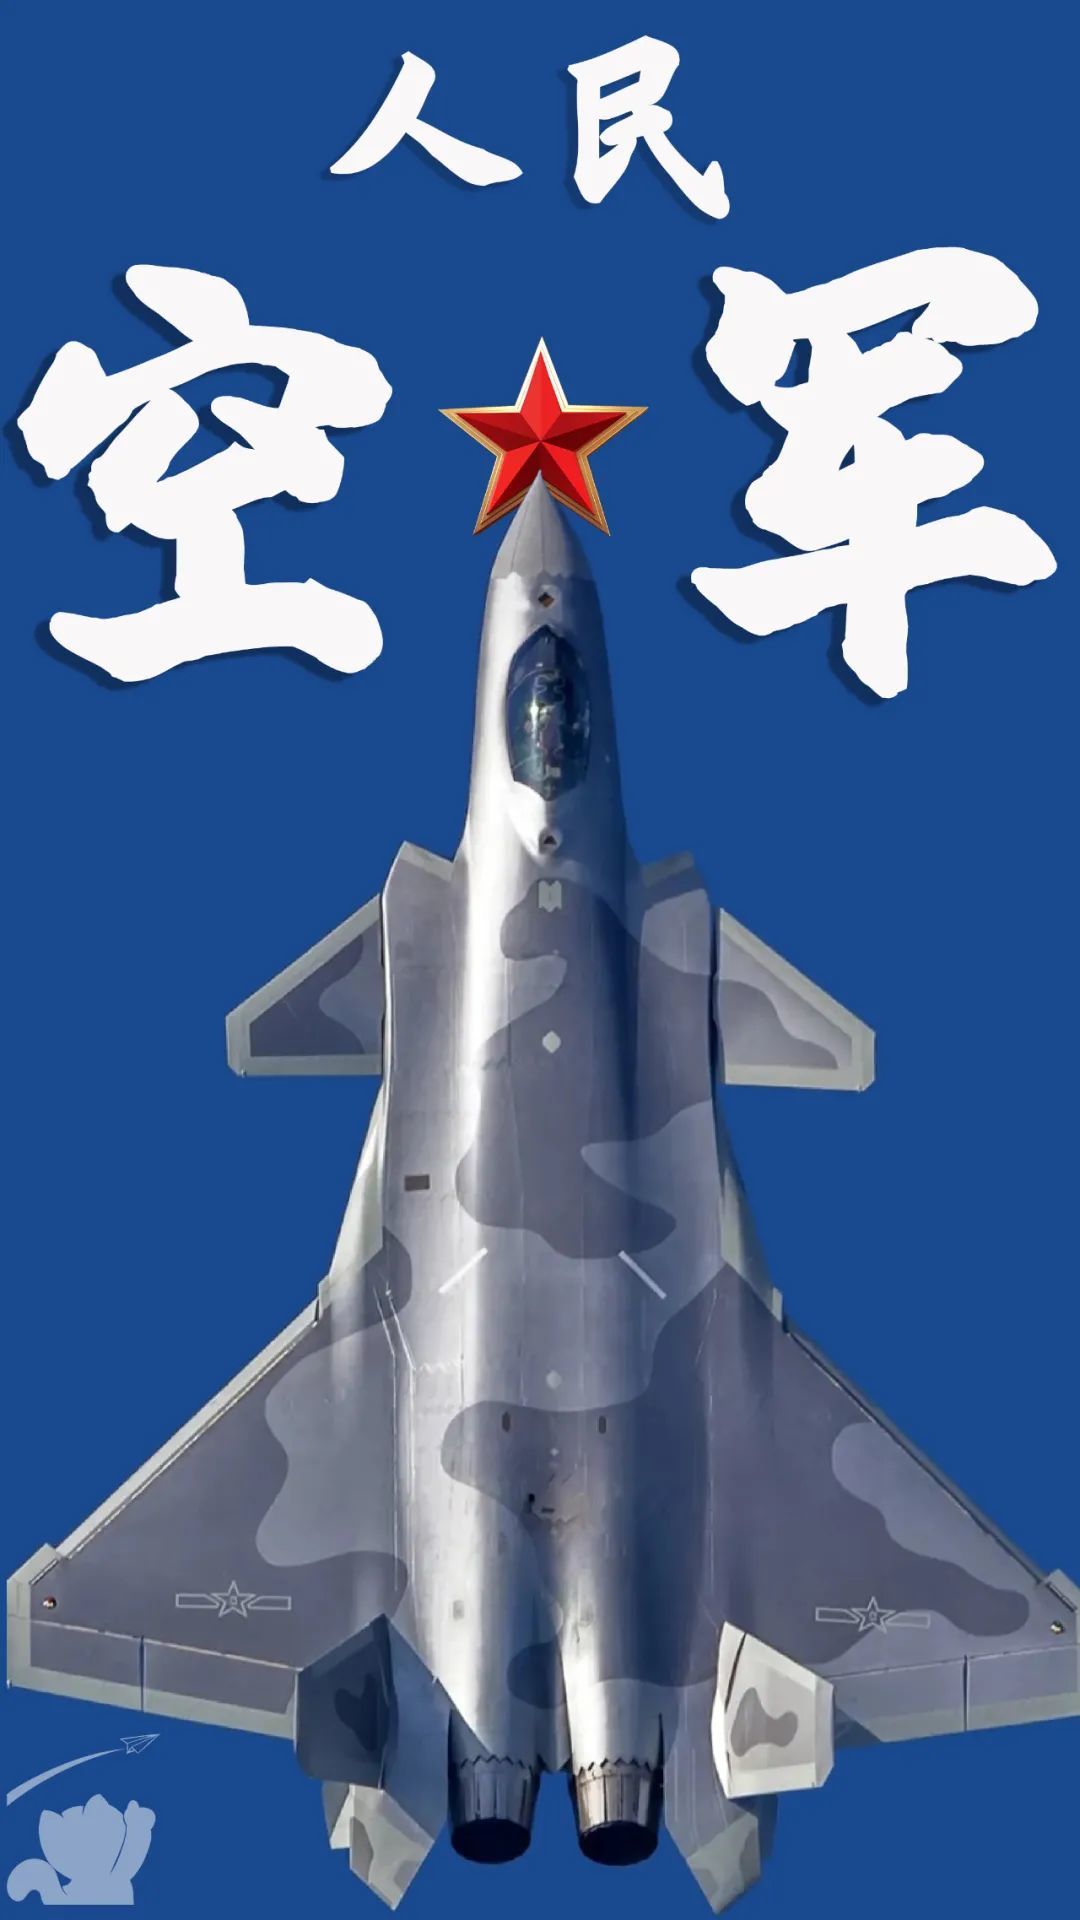 中国空军壁纸竖屏图片